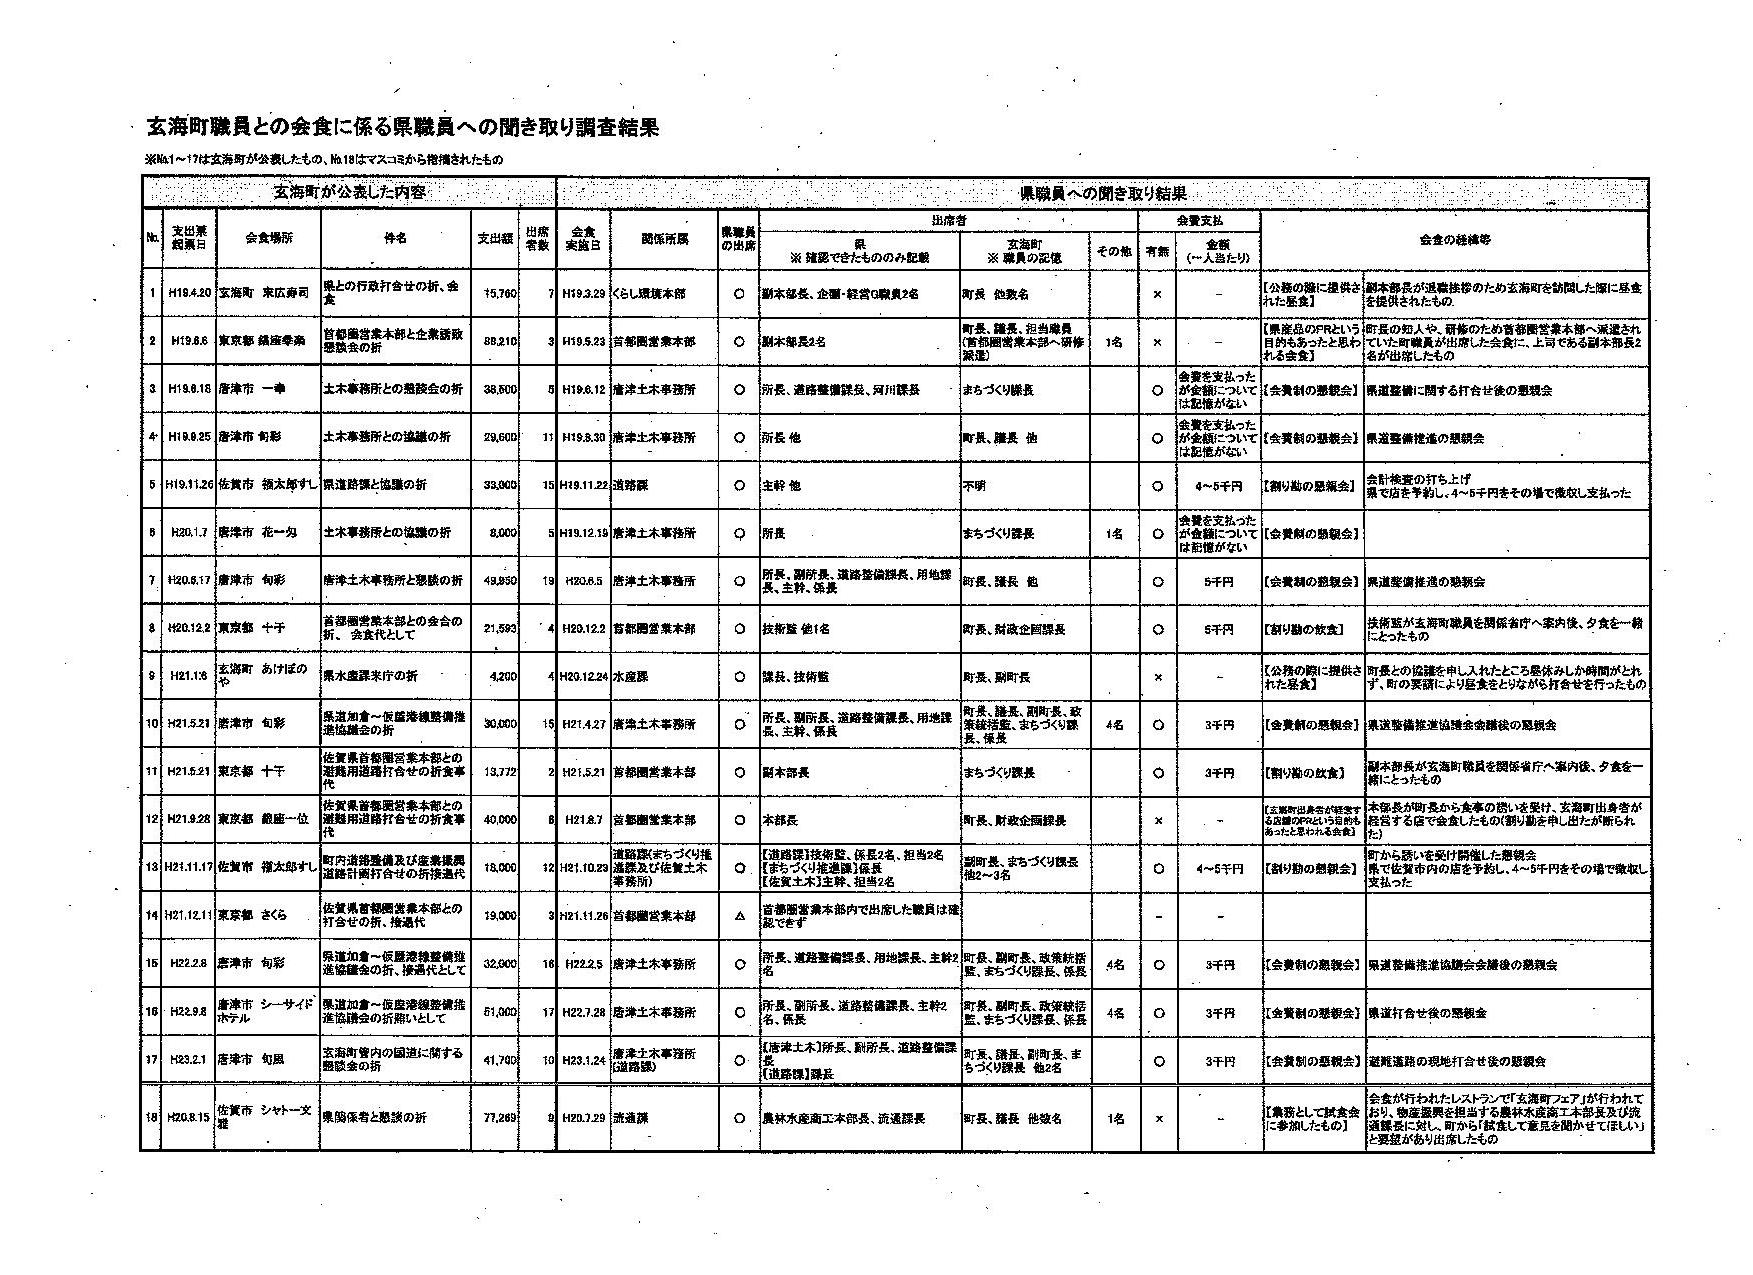 http://hunter-investigate.jp/news/2012/05/02/gennpatu%20114020113.jpg